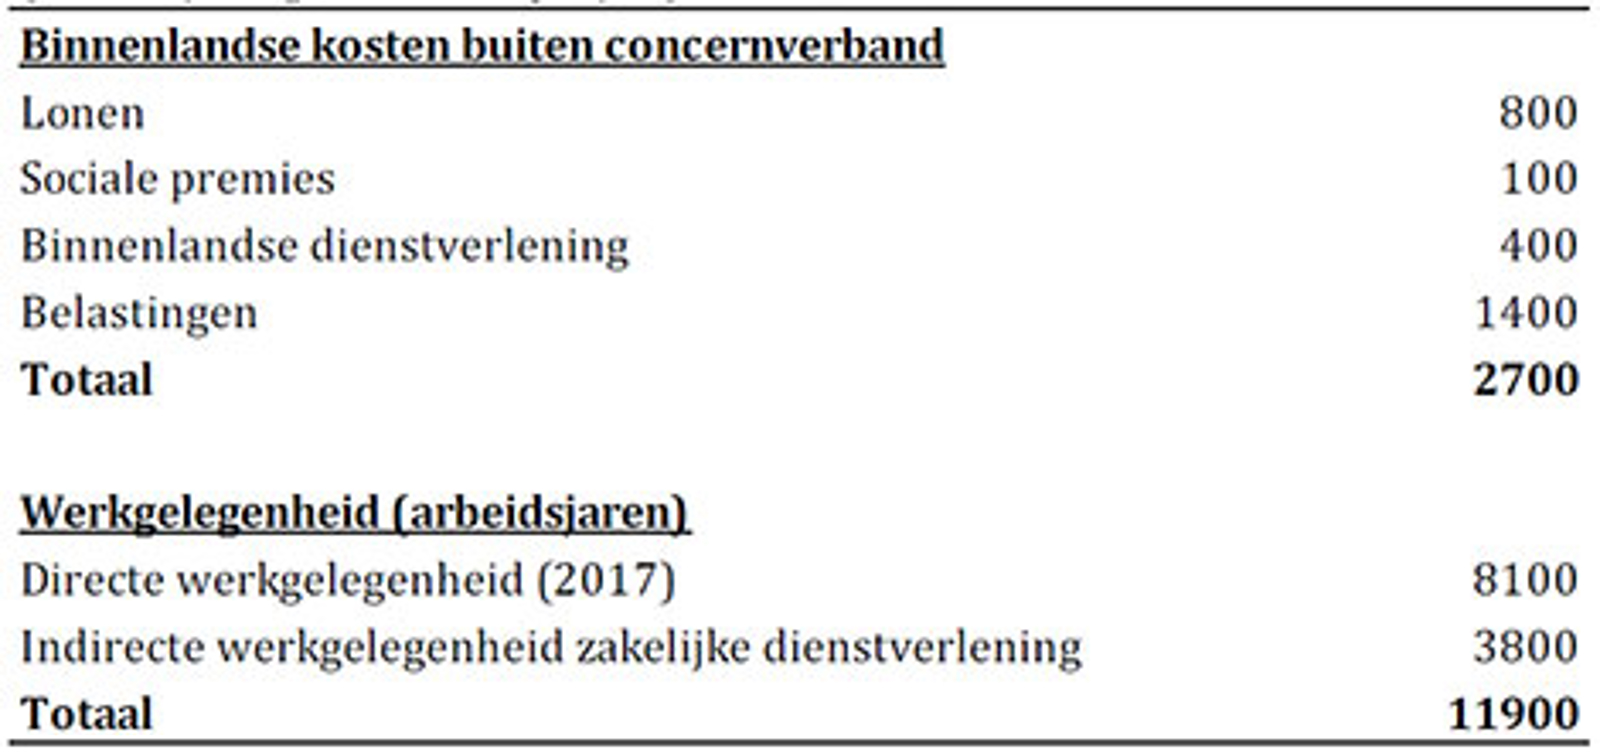 Tabel 1 Bijzondere financiële instellingen van beperkt belang voor Nederlandse economie